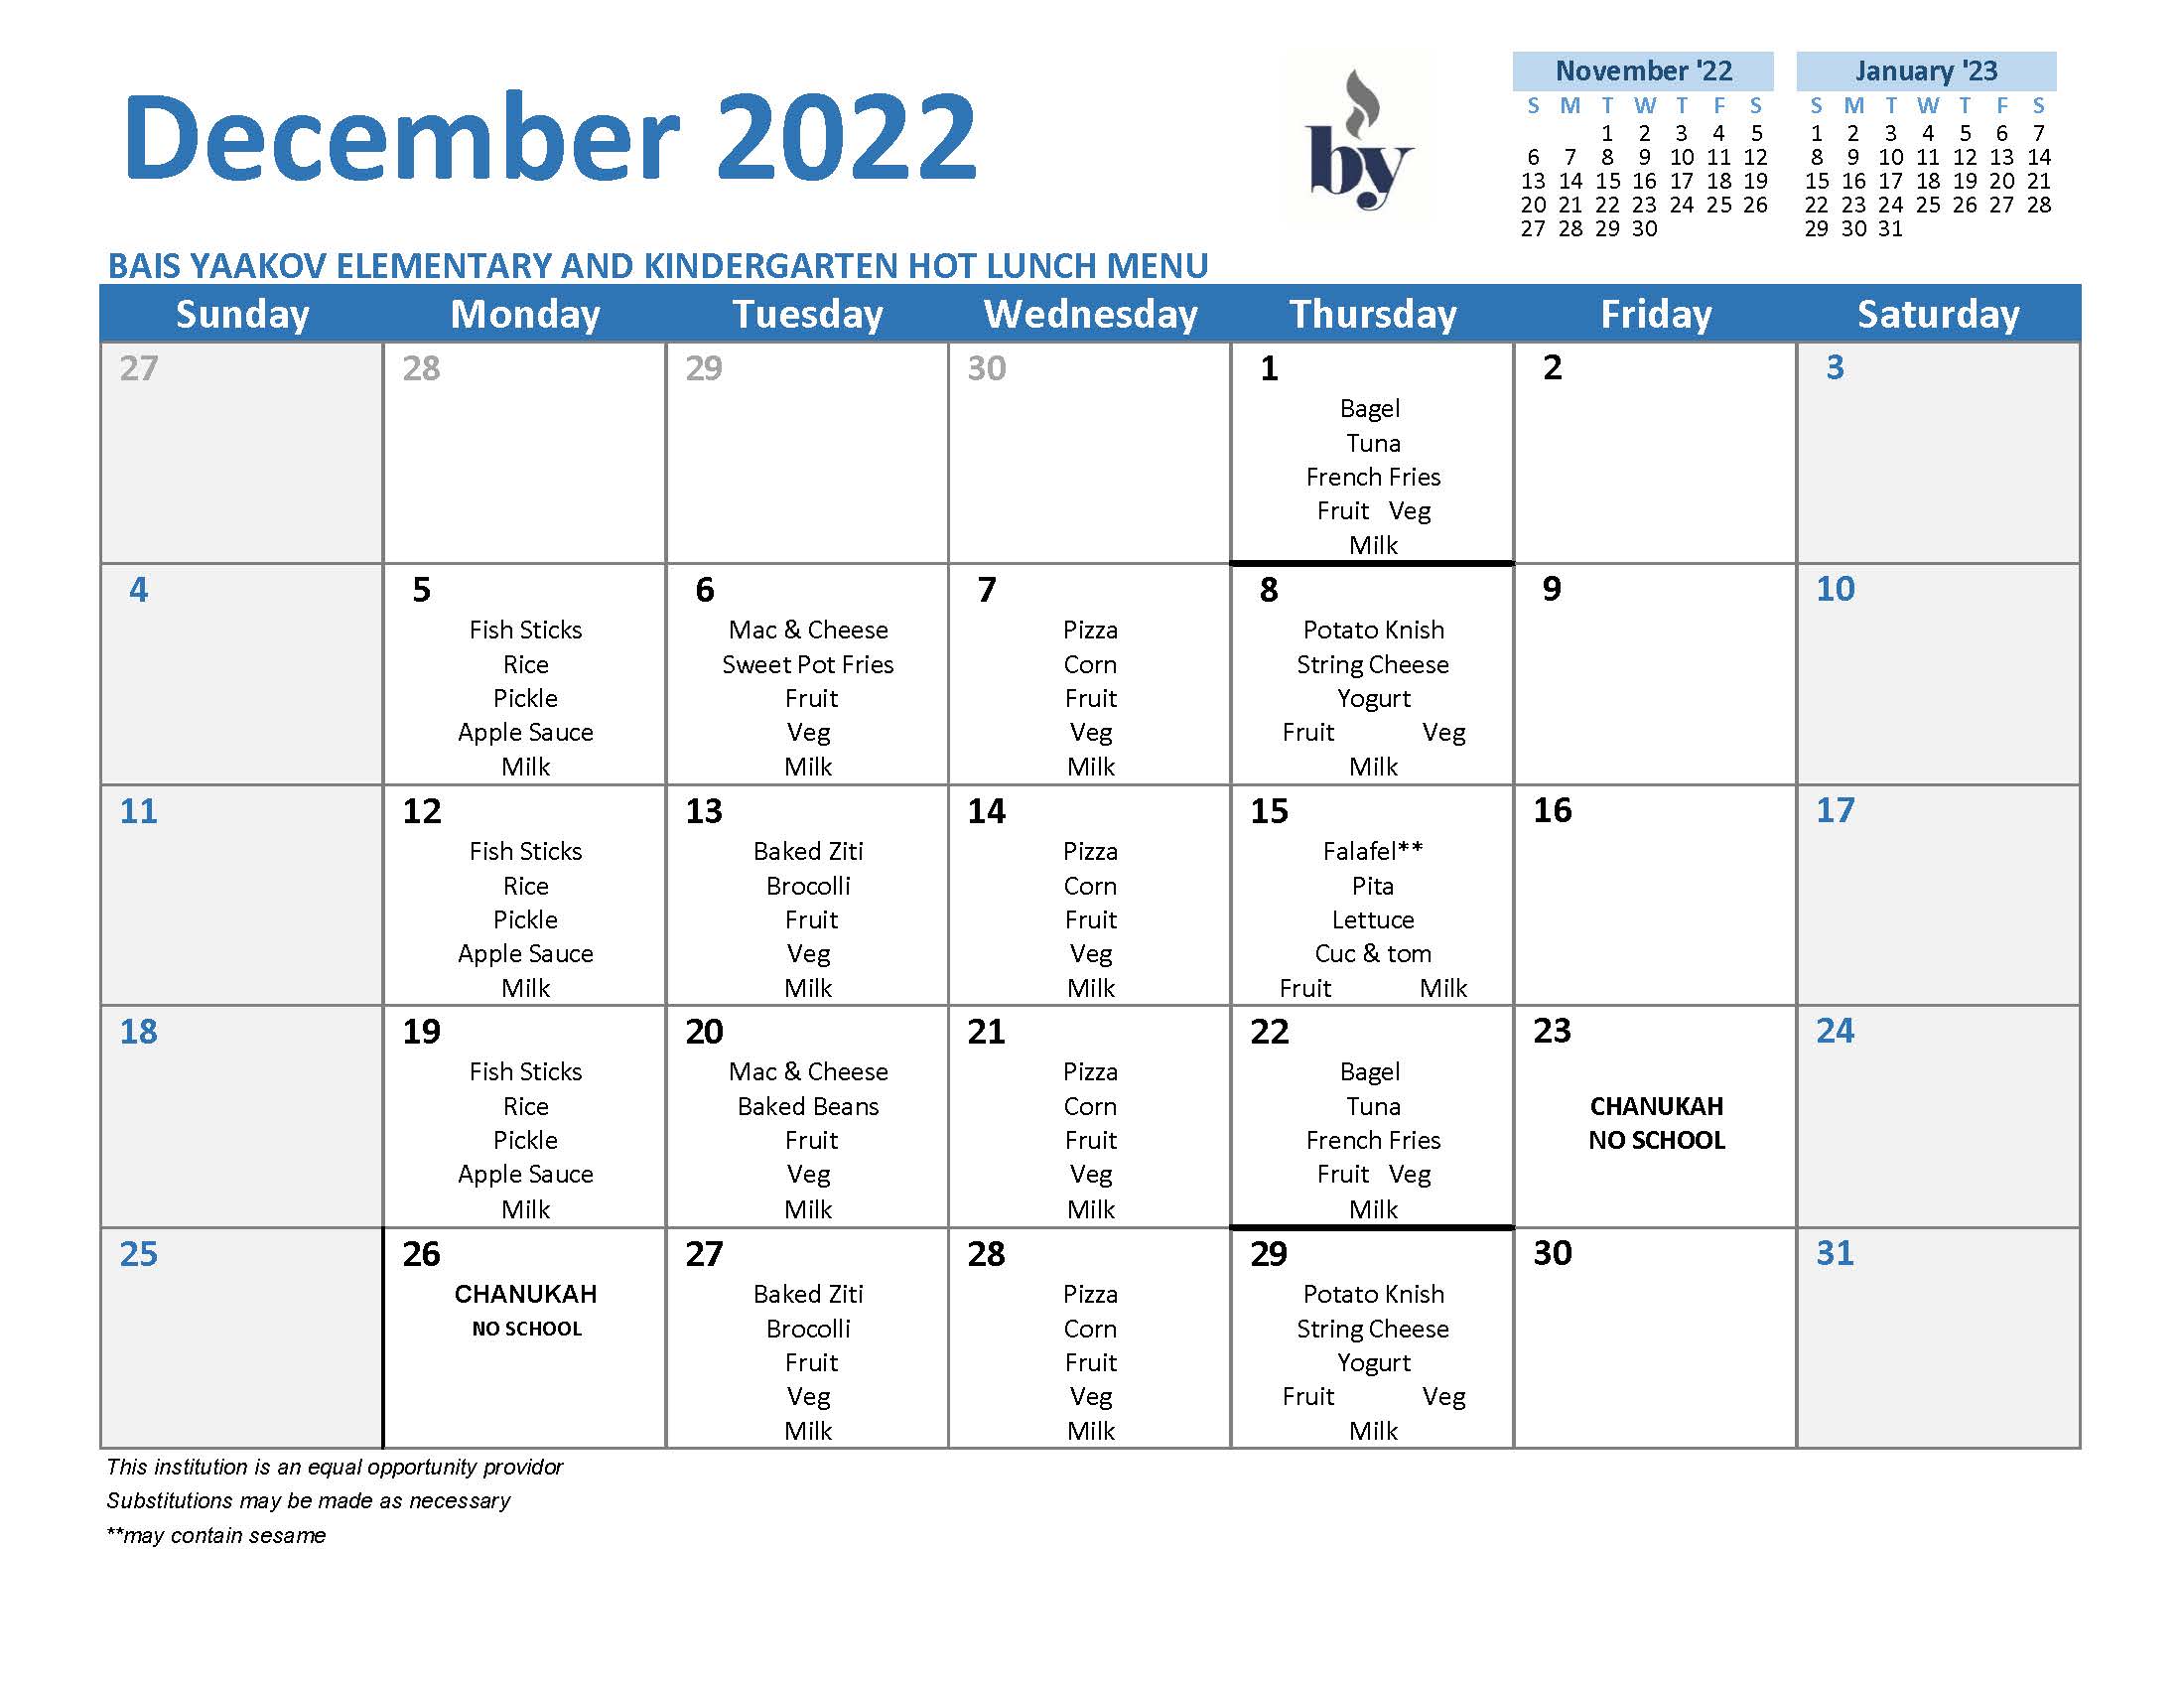 Elementary School Menu - December 2022